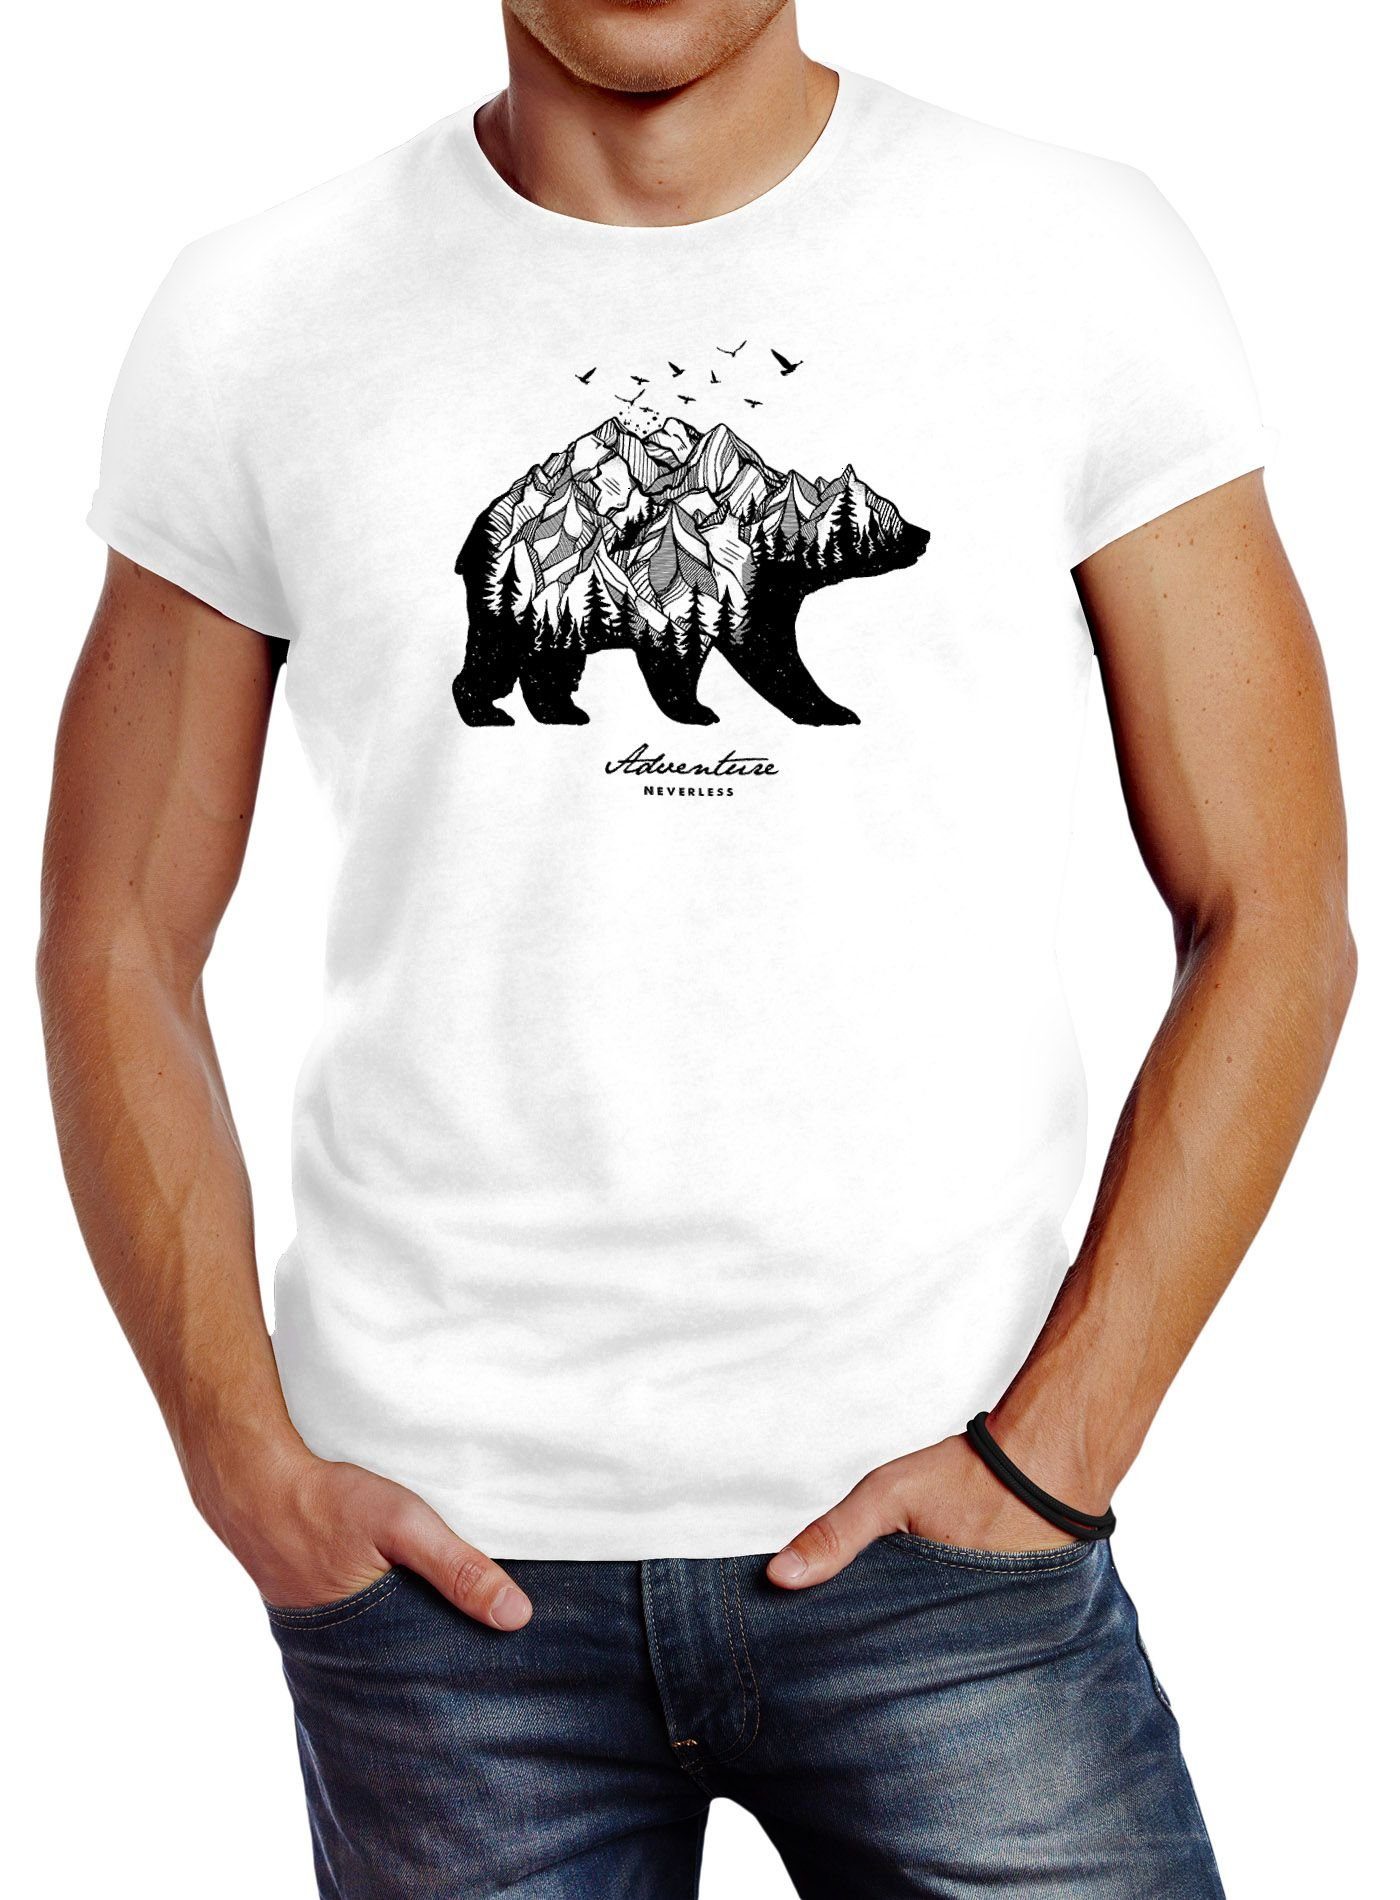 Adventure Bear Mountains Fit Abenteuer Neverless Neverless® weiß Berge Print-Shirt mit Bär Wald Print Herren Slim T-Shirt